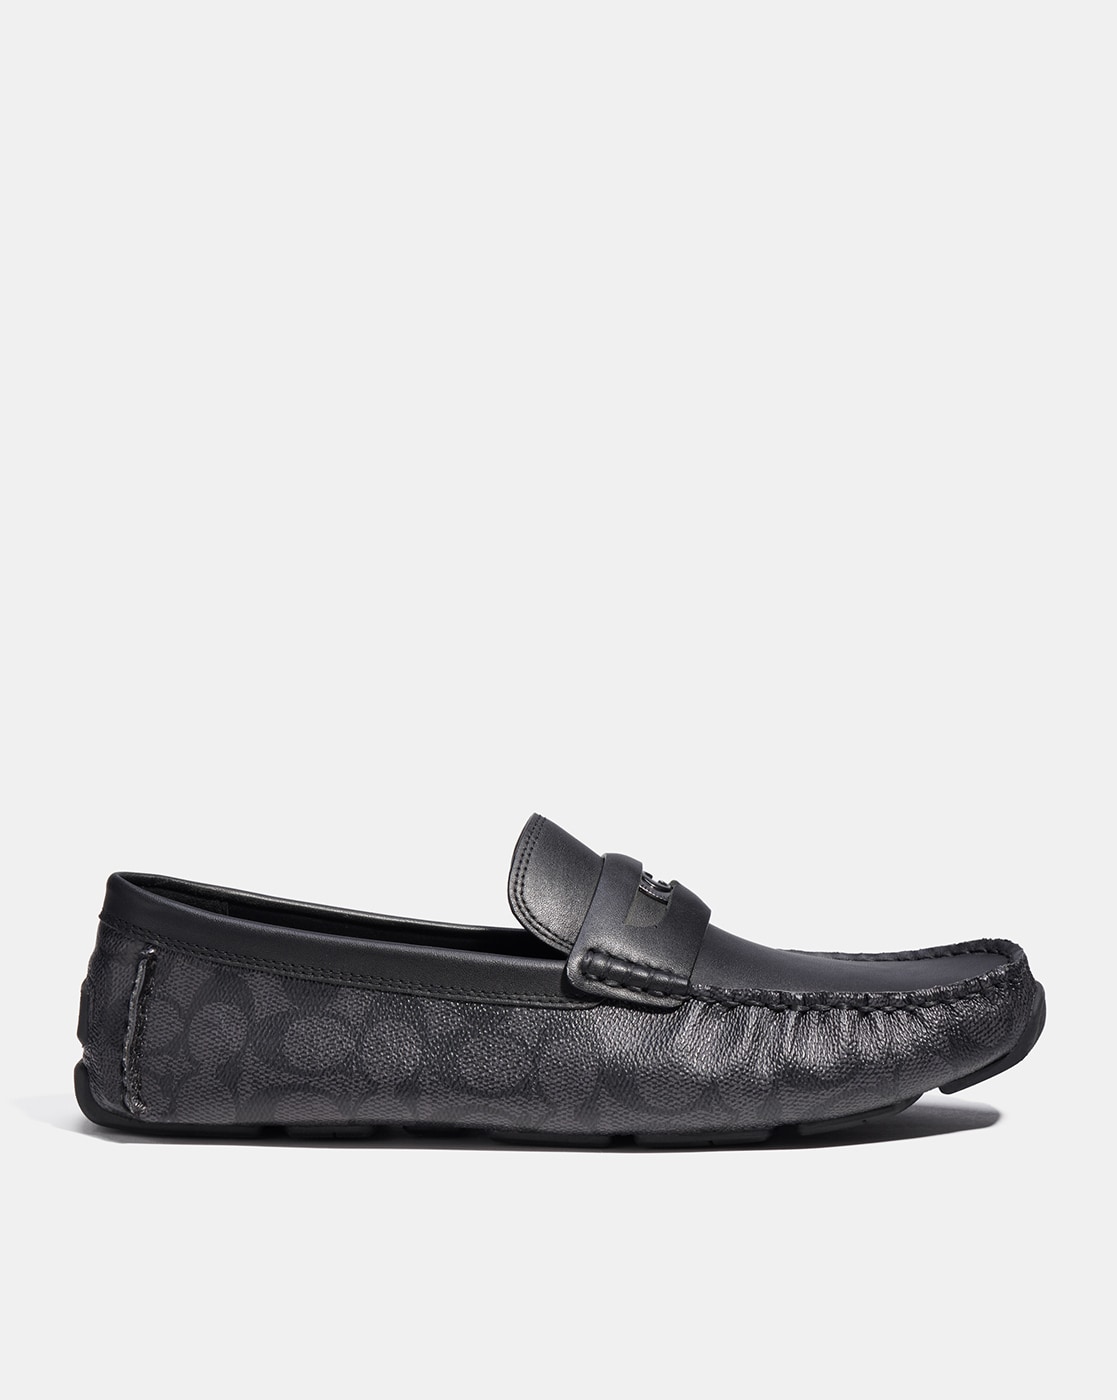 Coach Bronze Sandals Shoes Sz 6.5 B Mint | eBay